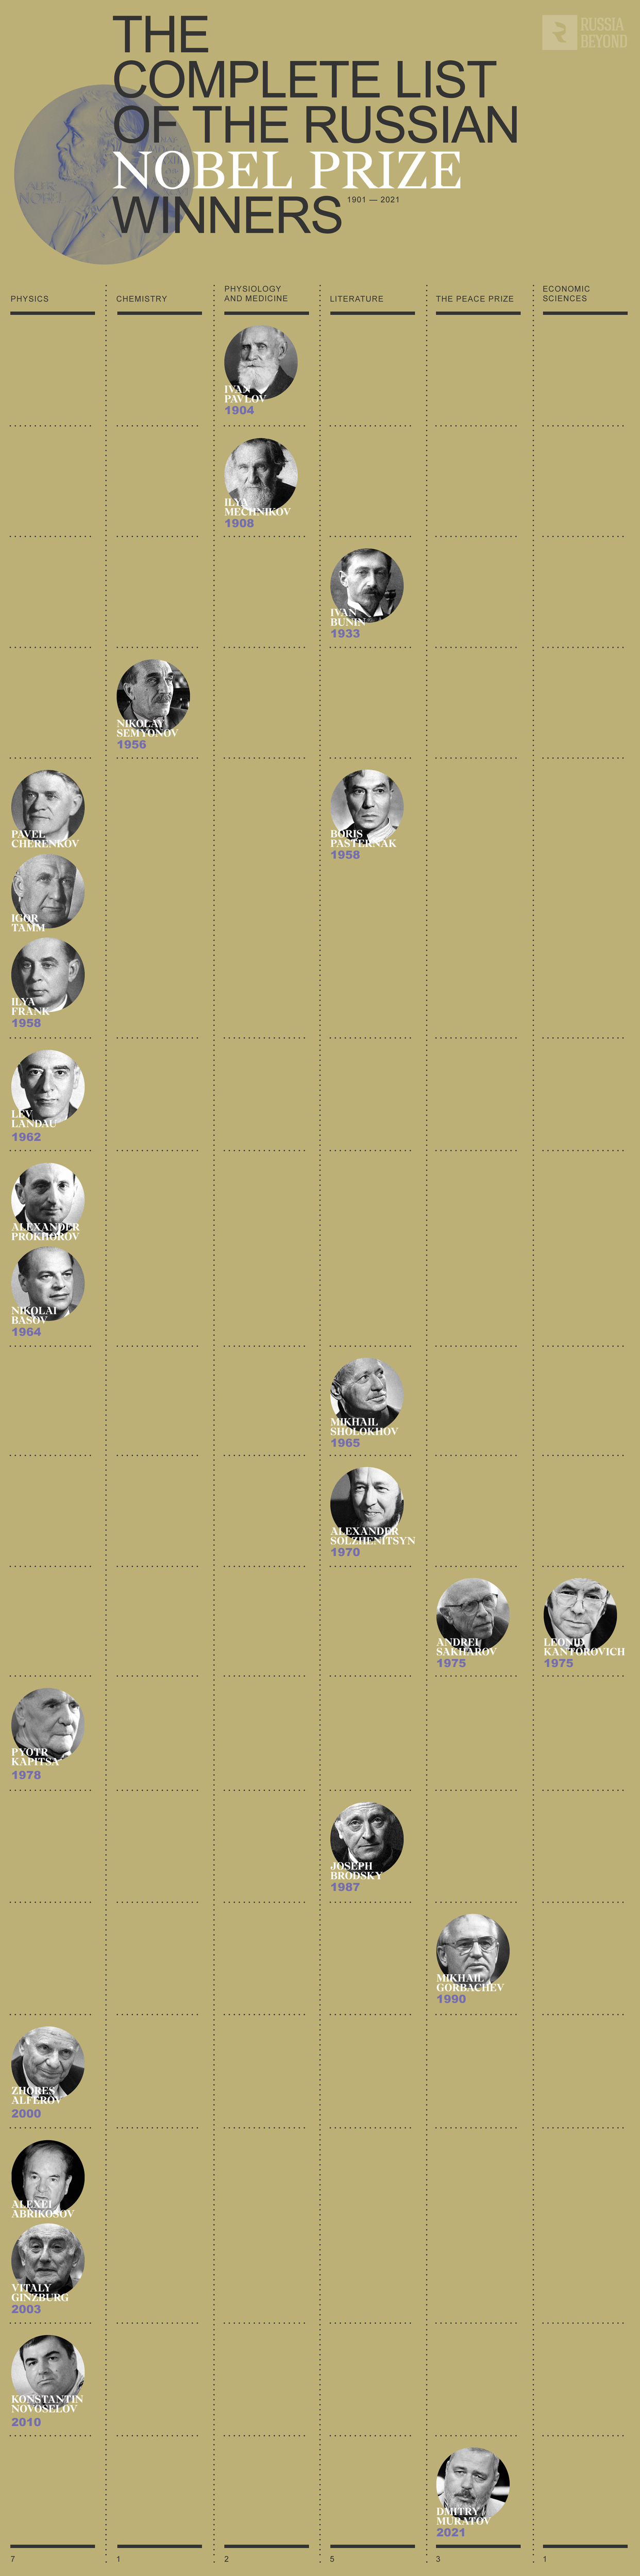 The complete list of Russian Nobel laureates